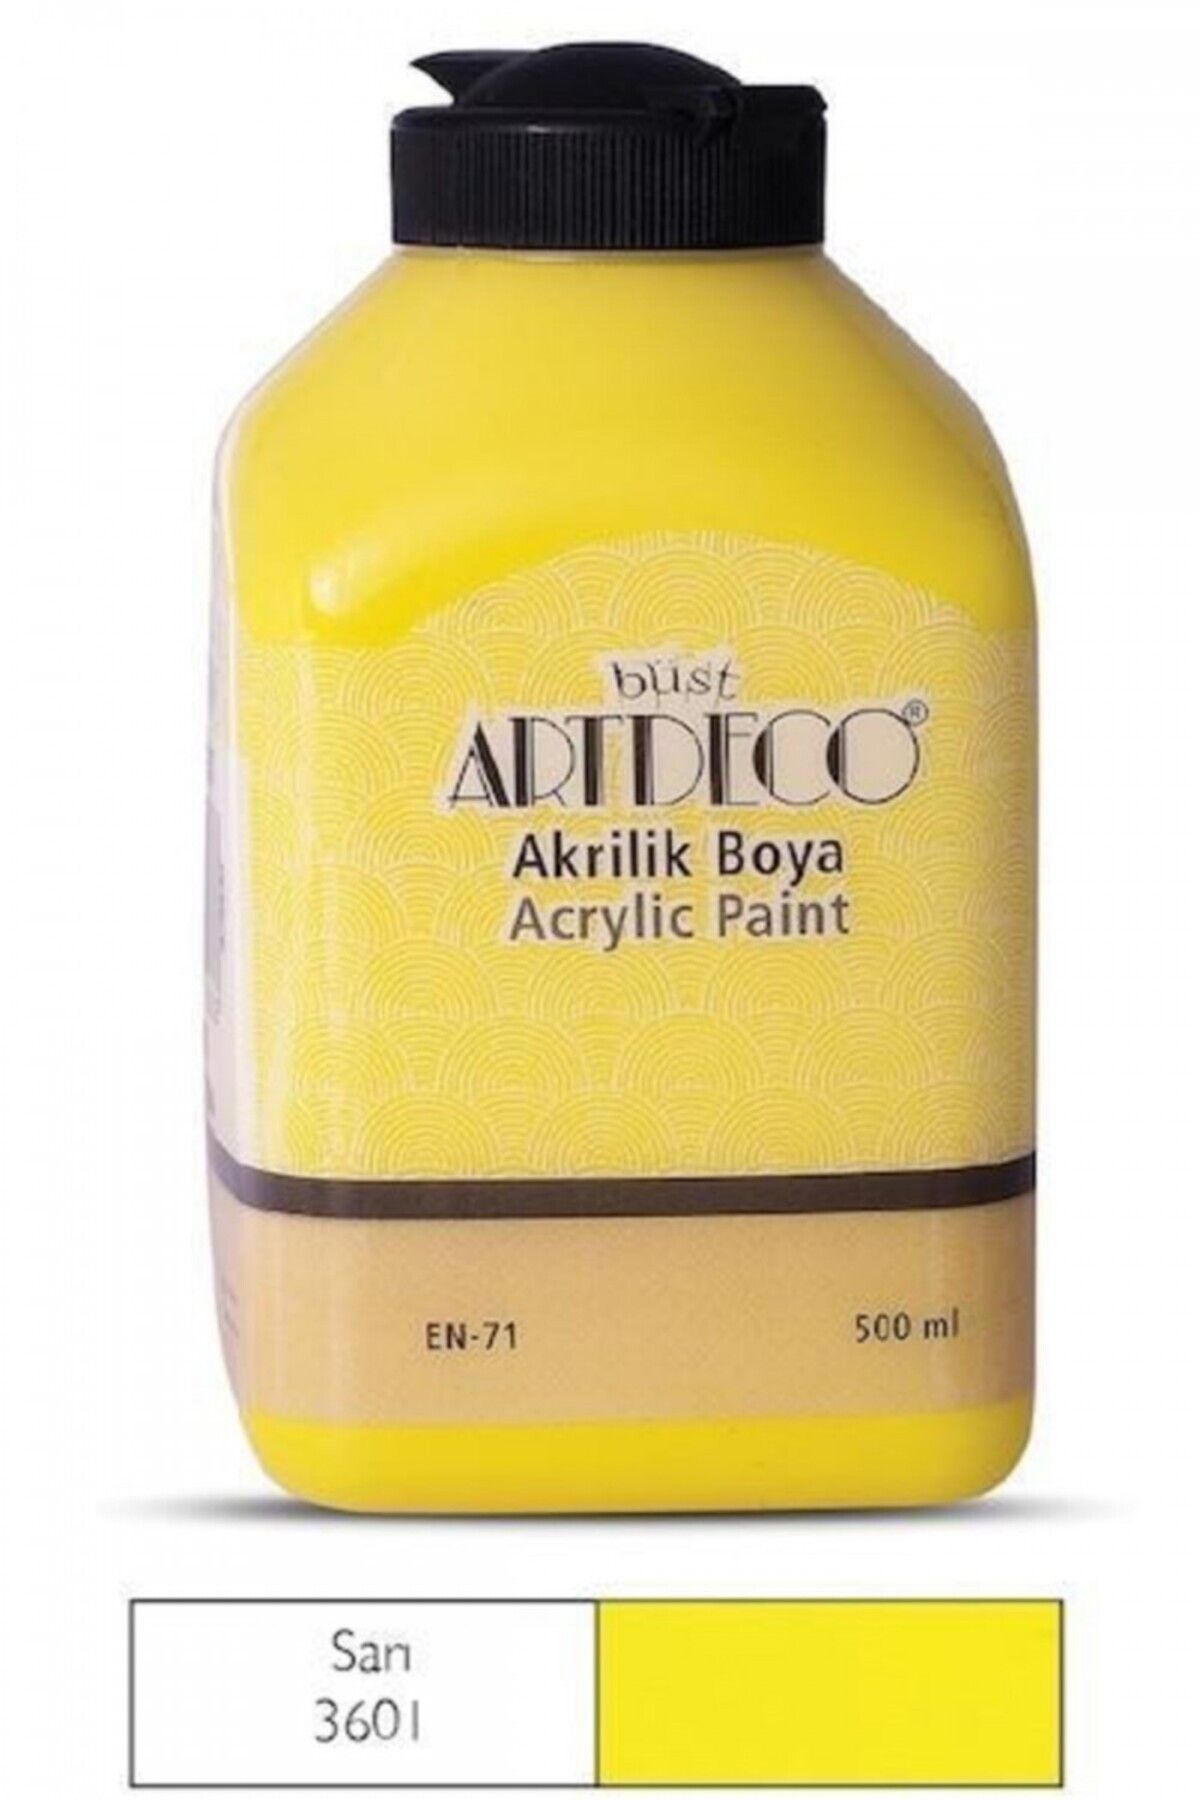 Artdeco Akrilik Boya 70l-3601 Sarı 500 ml